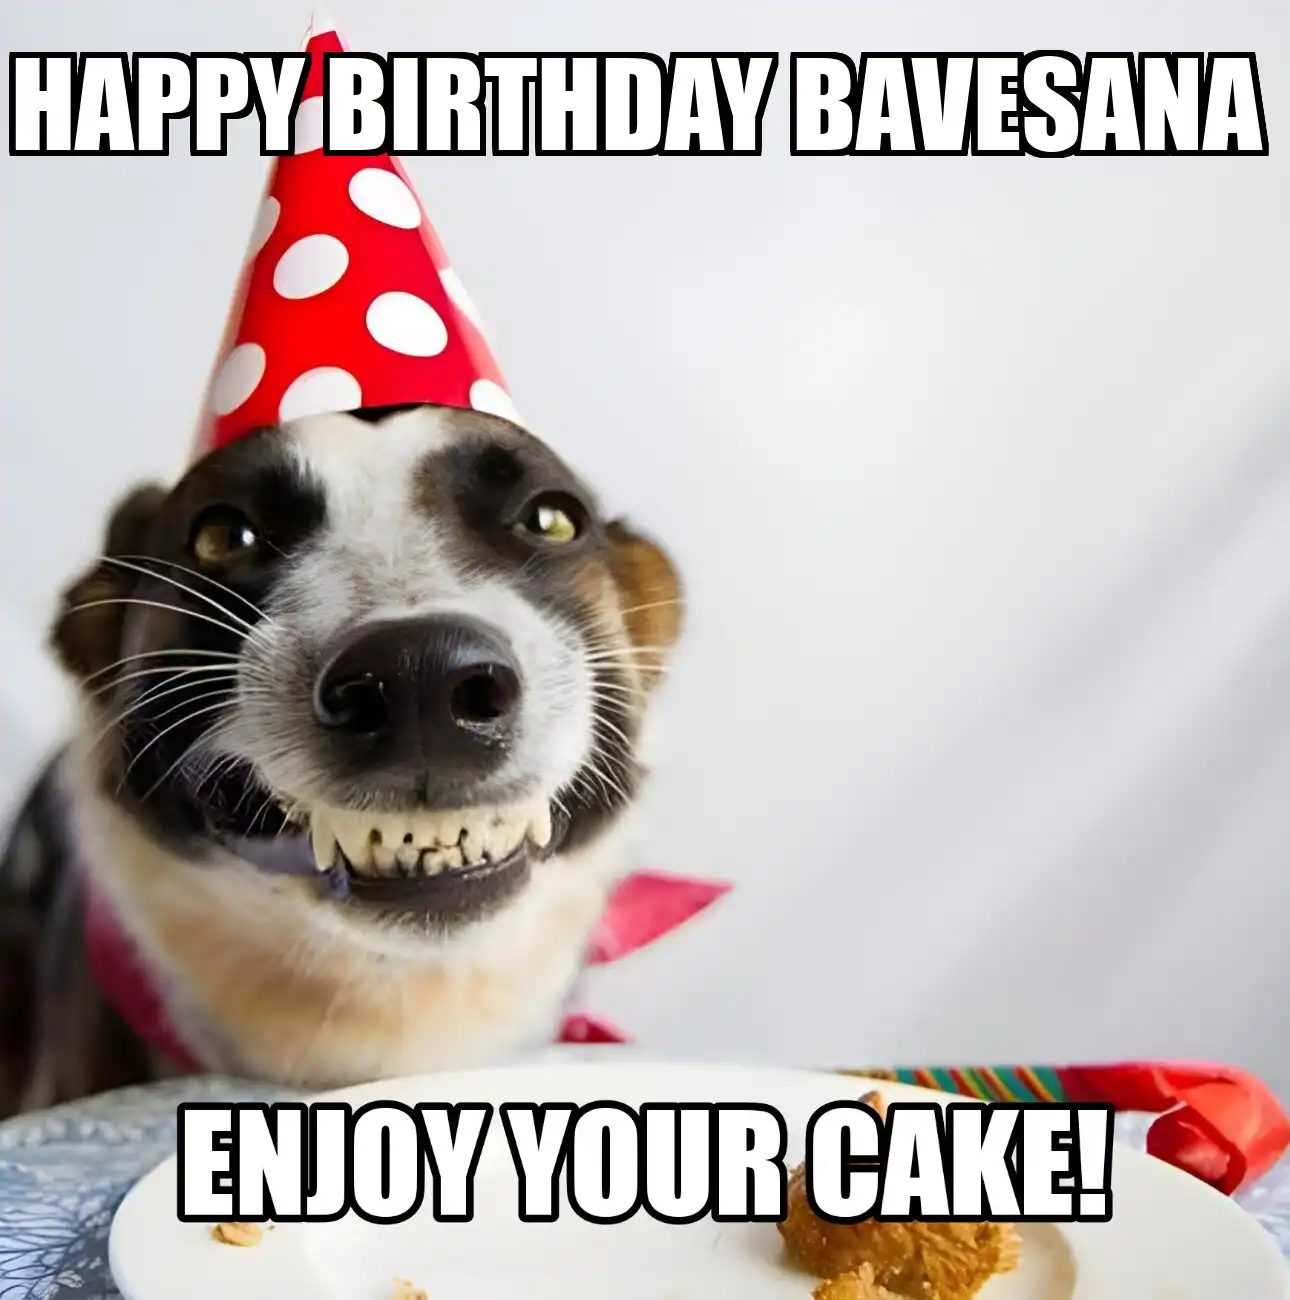 Happy Birthday Bavesana Enjoy Your Cake Dog Meme